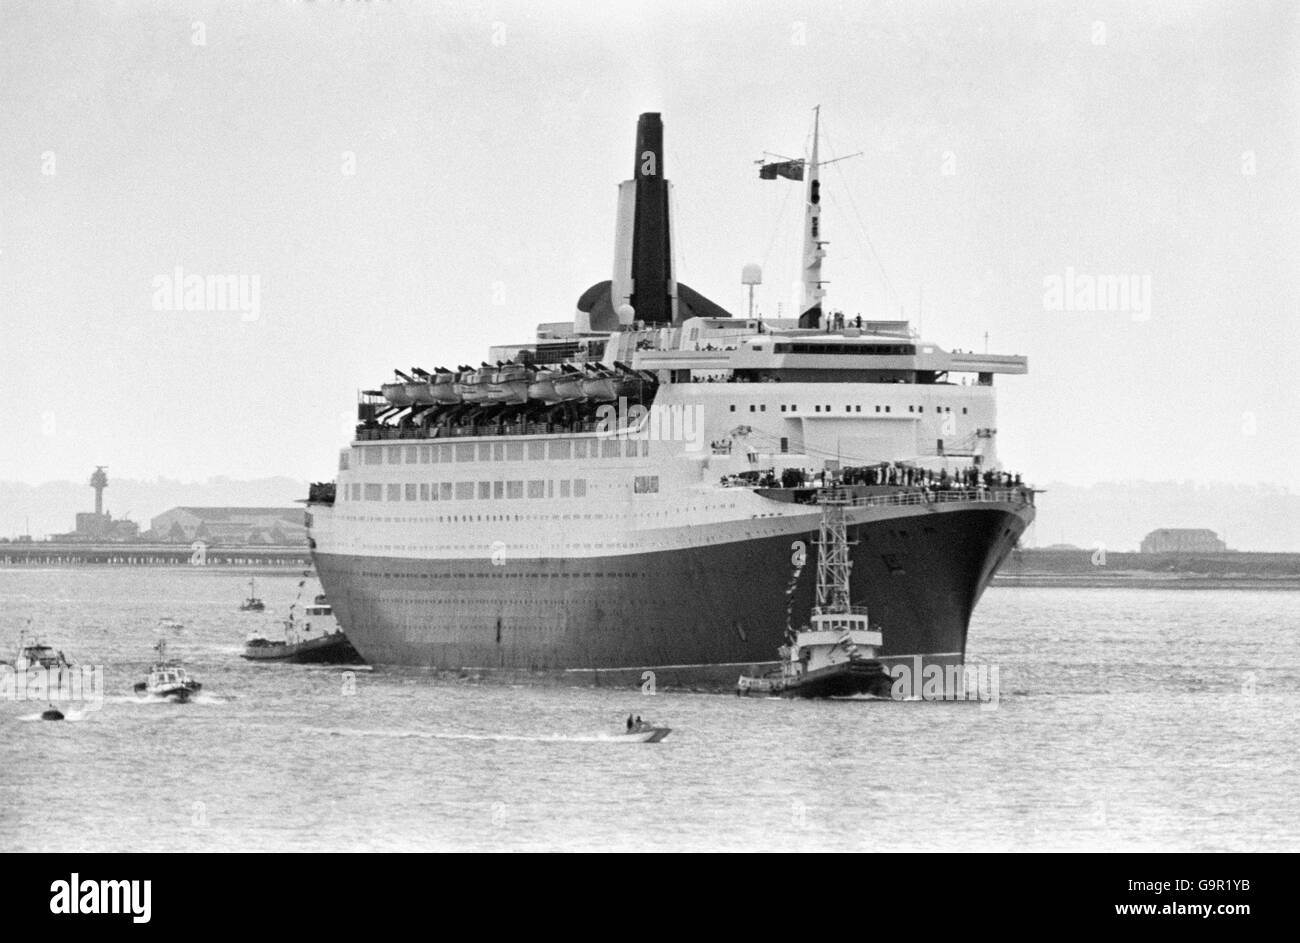 Die QE2, die nach ihrer Reise von den Falklands in Southampton ins Dock kam. An Bord des riesigen Liners waren 700 Überlebende der verlorenen Kriegsschiffe Coventry, Antelope und Ardent, die im Kampf um die Inseln versunken waren. Stockfoto